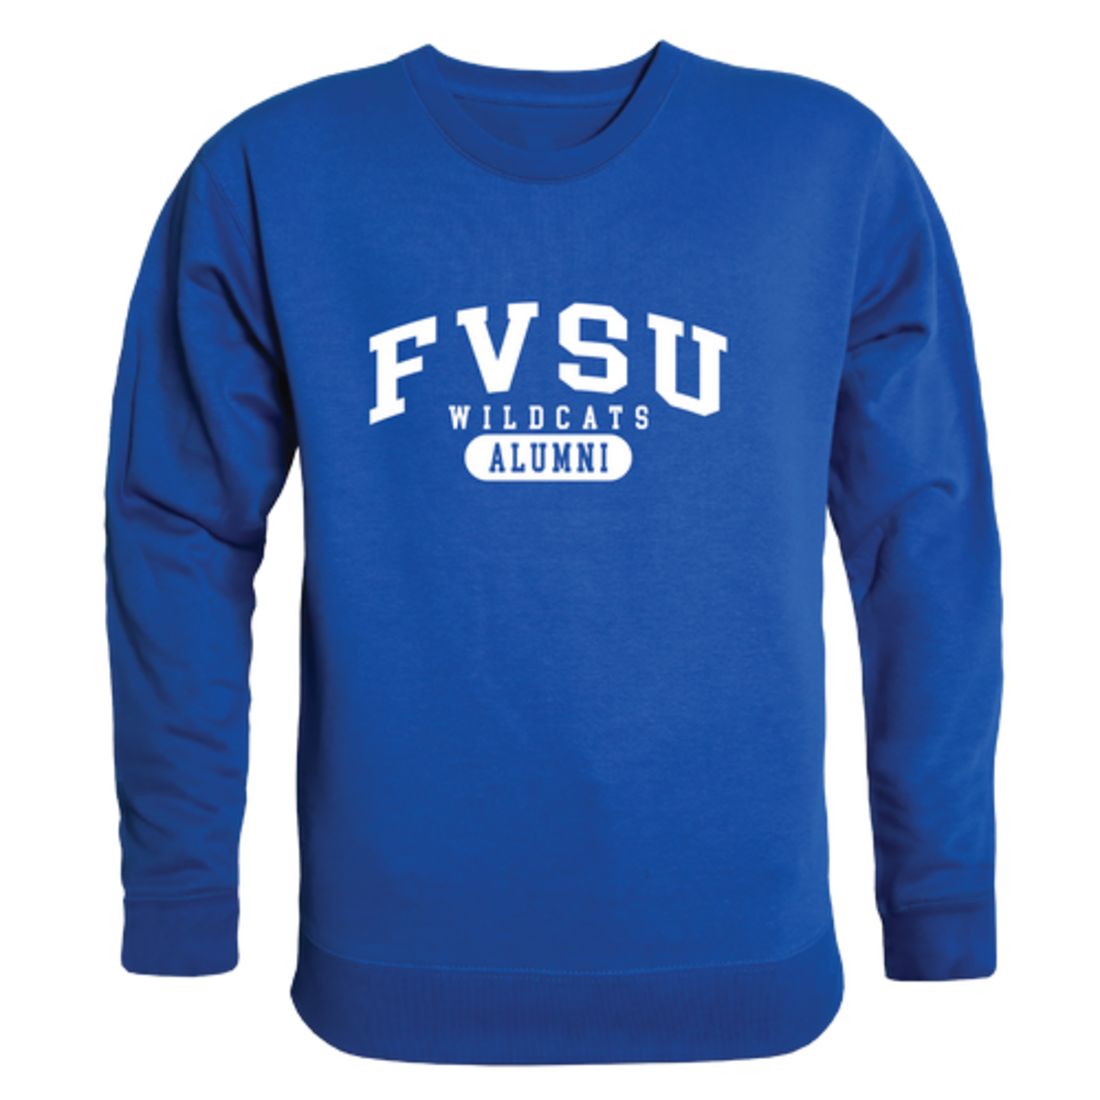 Fort-Valley-State-University-Wildcats-Alumni-Fleece-Crewneck-Pullover-Sweatshirt